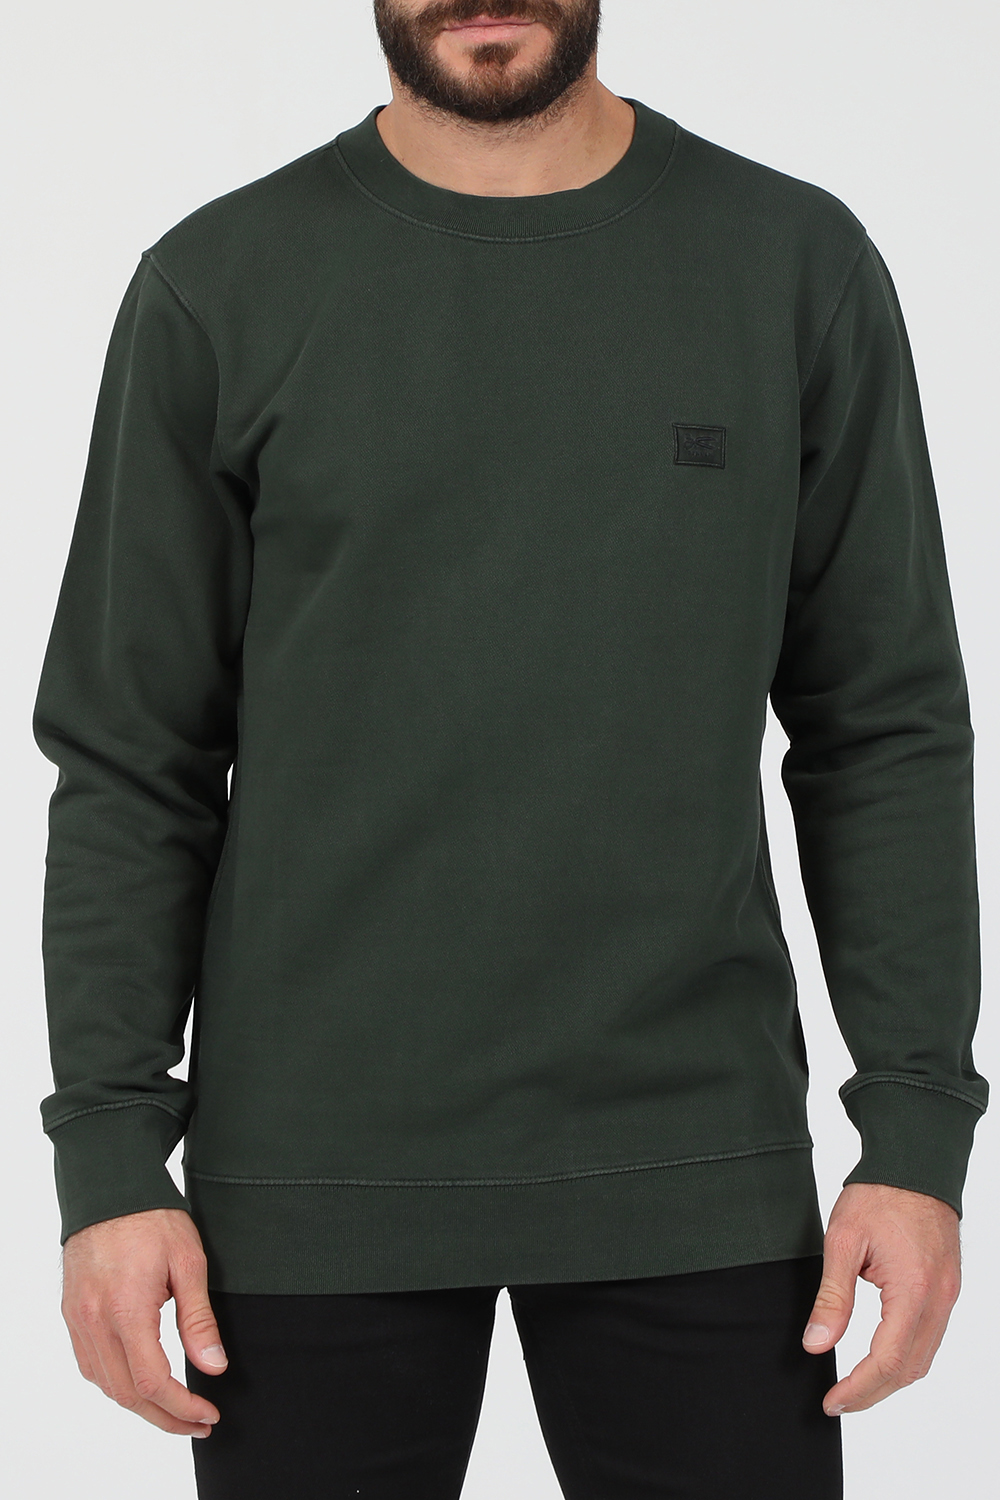 Ανδρικά/Ρούχα/Φούτερ/Μπλούζες DENHAM - Ανδρική φούτερ μπλούζα DENHAM APPLIQ πράσινη